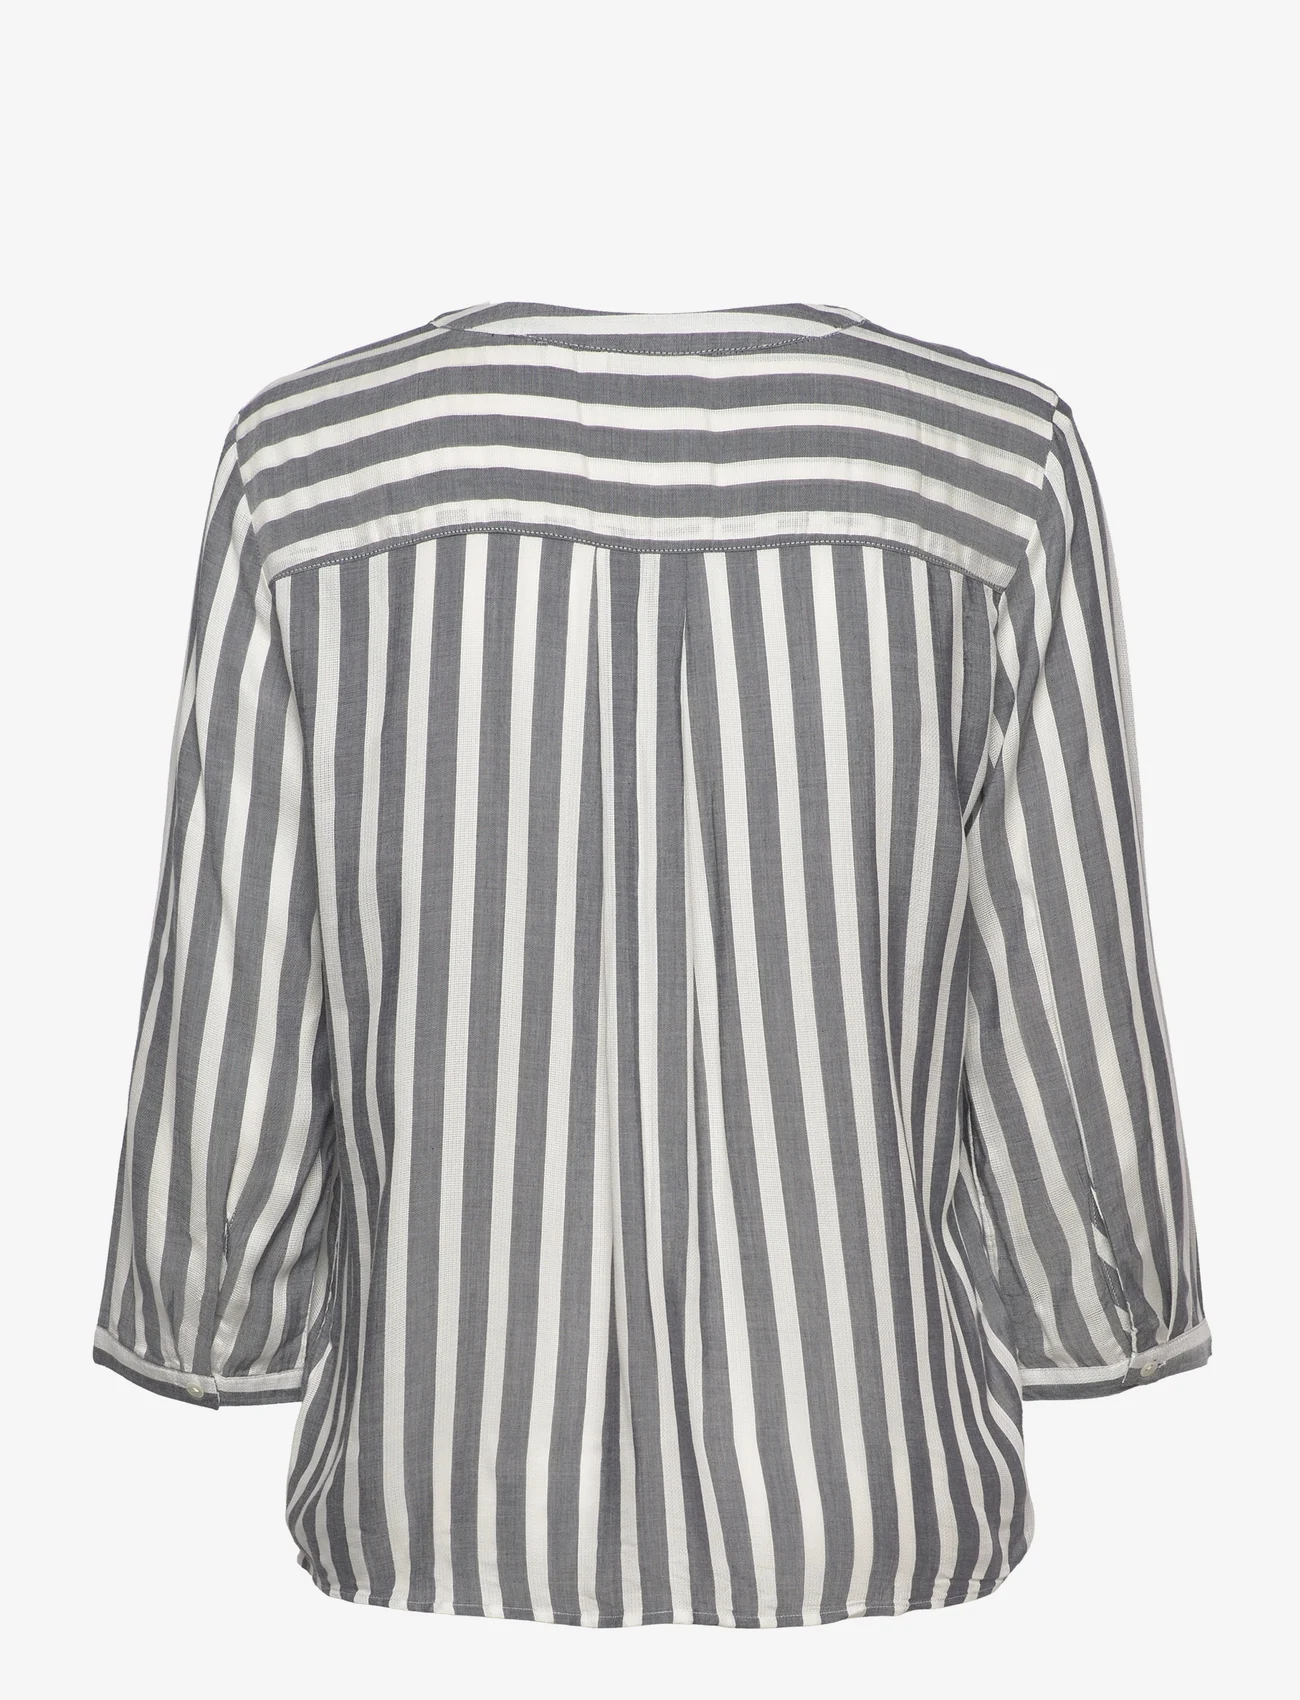 Tom Tailor - blouse striped - langærmede bluser - offwhite navy vertical stripe - 1